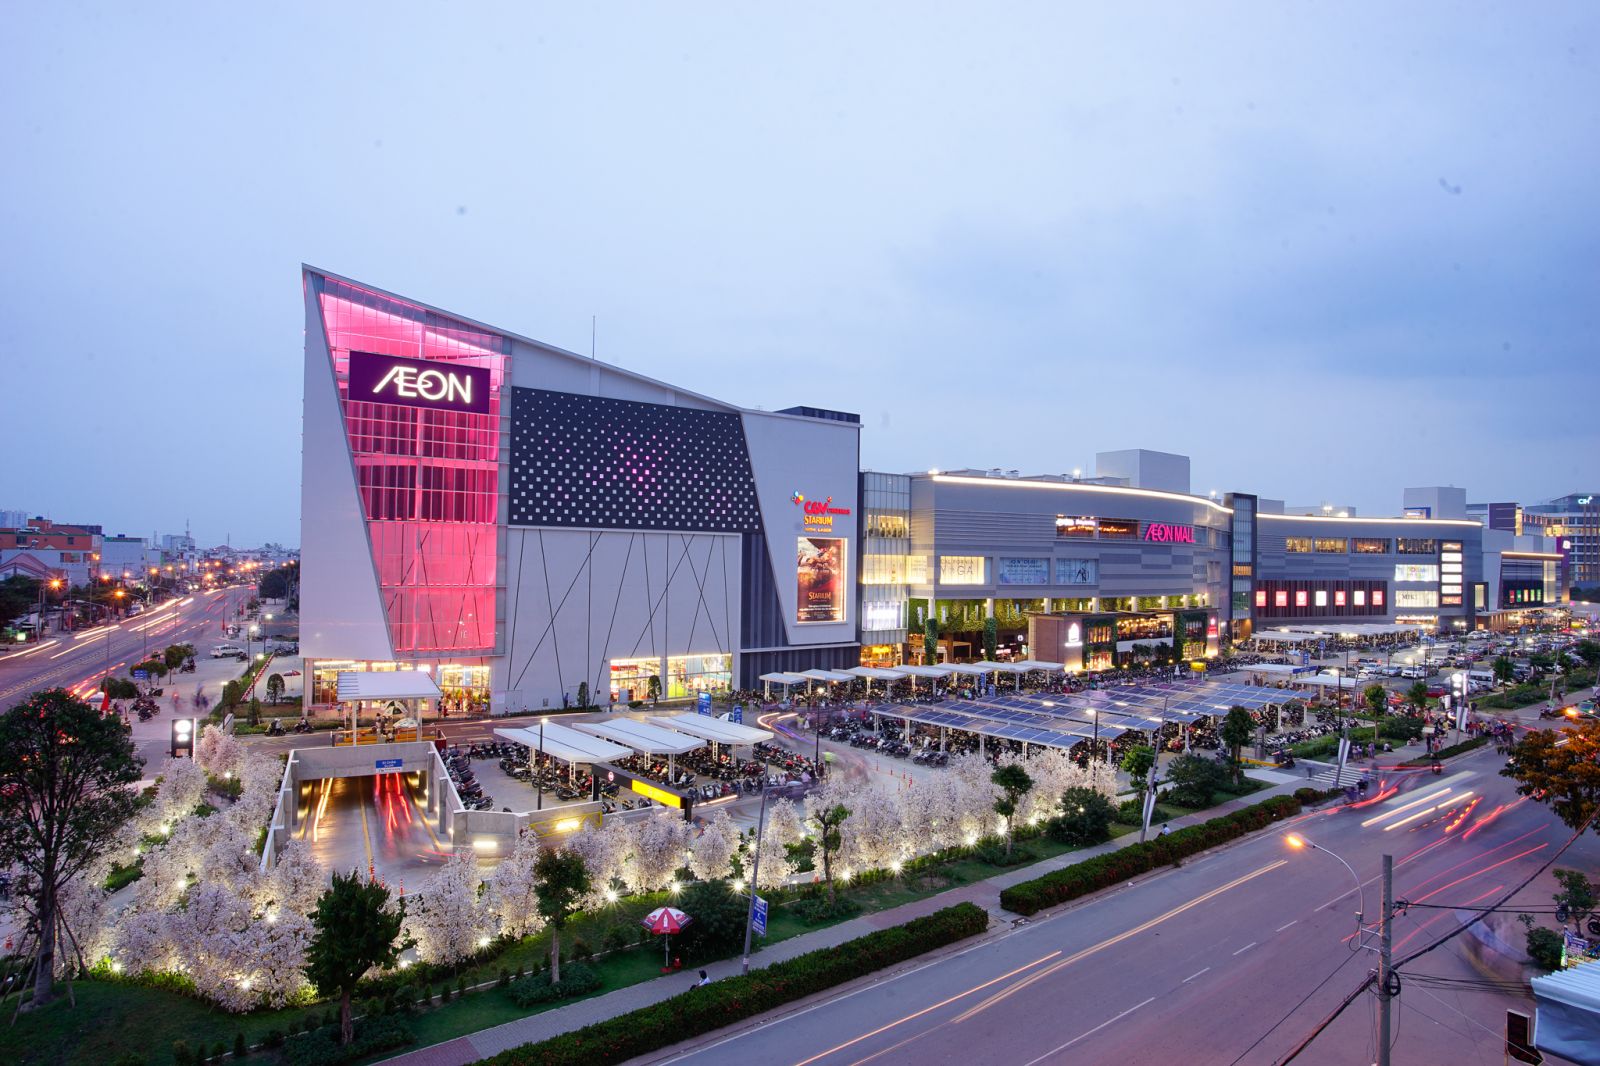 cạnh tranh ở phân khúc đại siêu thị và trung tâm mua sắm tại Việt Nam đang ngày càng gay gắt.